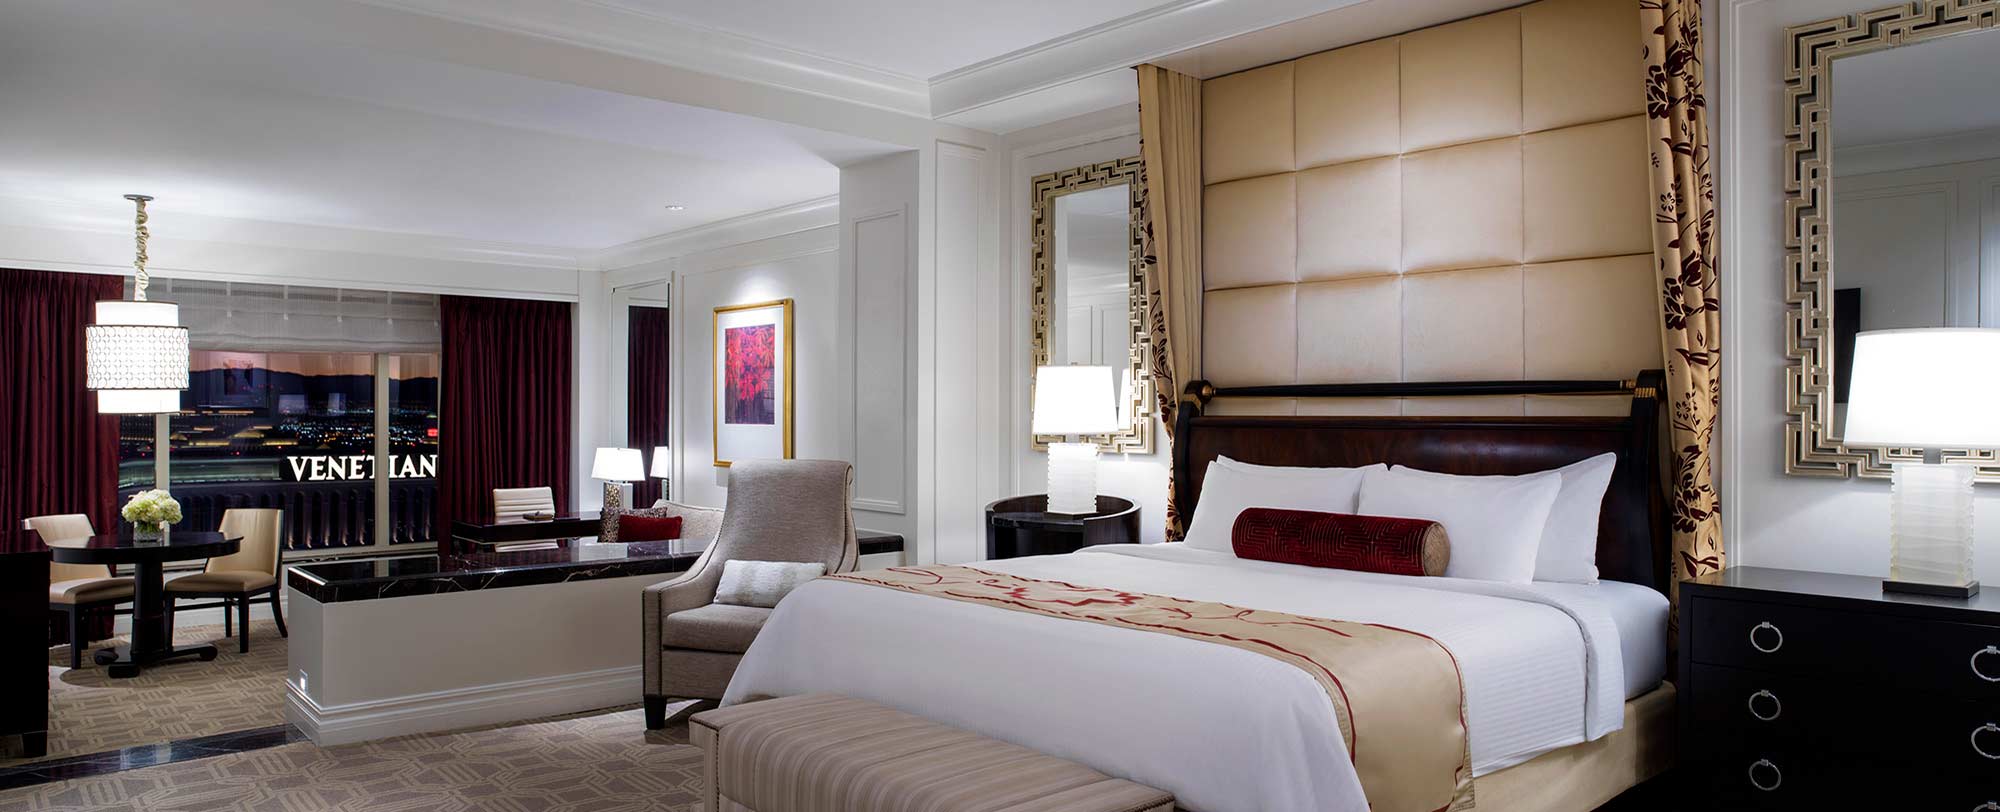 GOLD LV Bedding Sets Duvet Cover Lv Bedroom Sets Luxury Brand Bedding